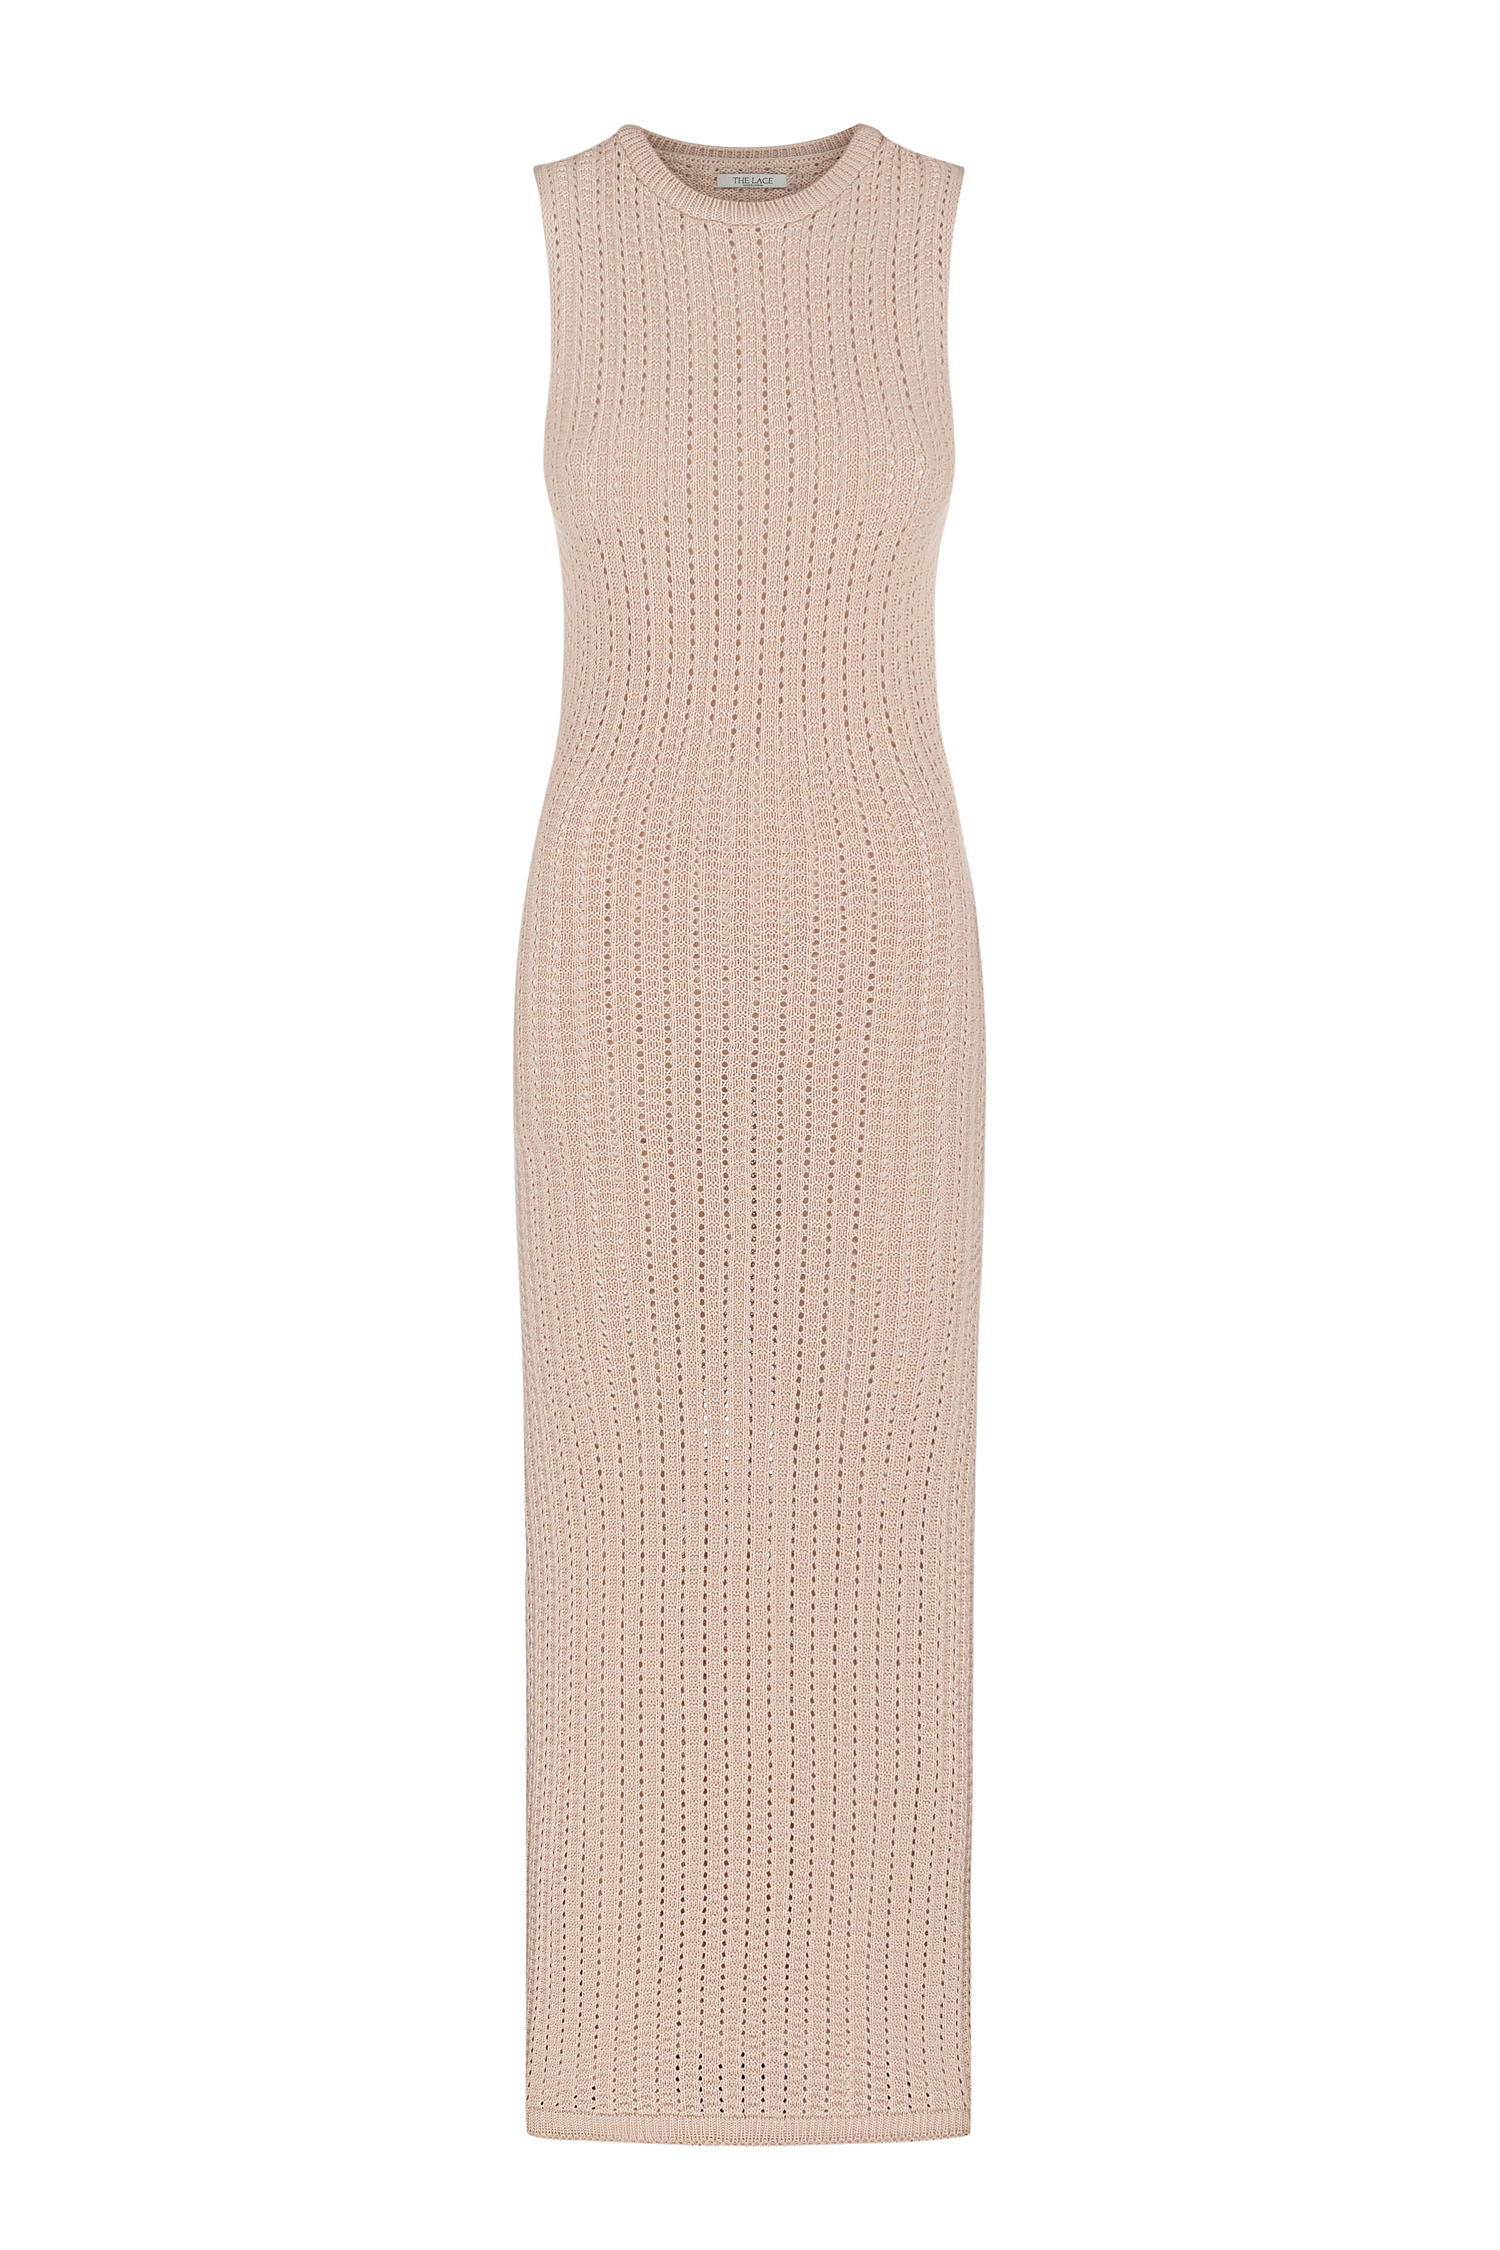 Трикотажна сукня максі з ажурною вʼязкою кремова - THE LACE фото 152678